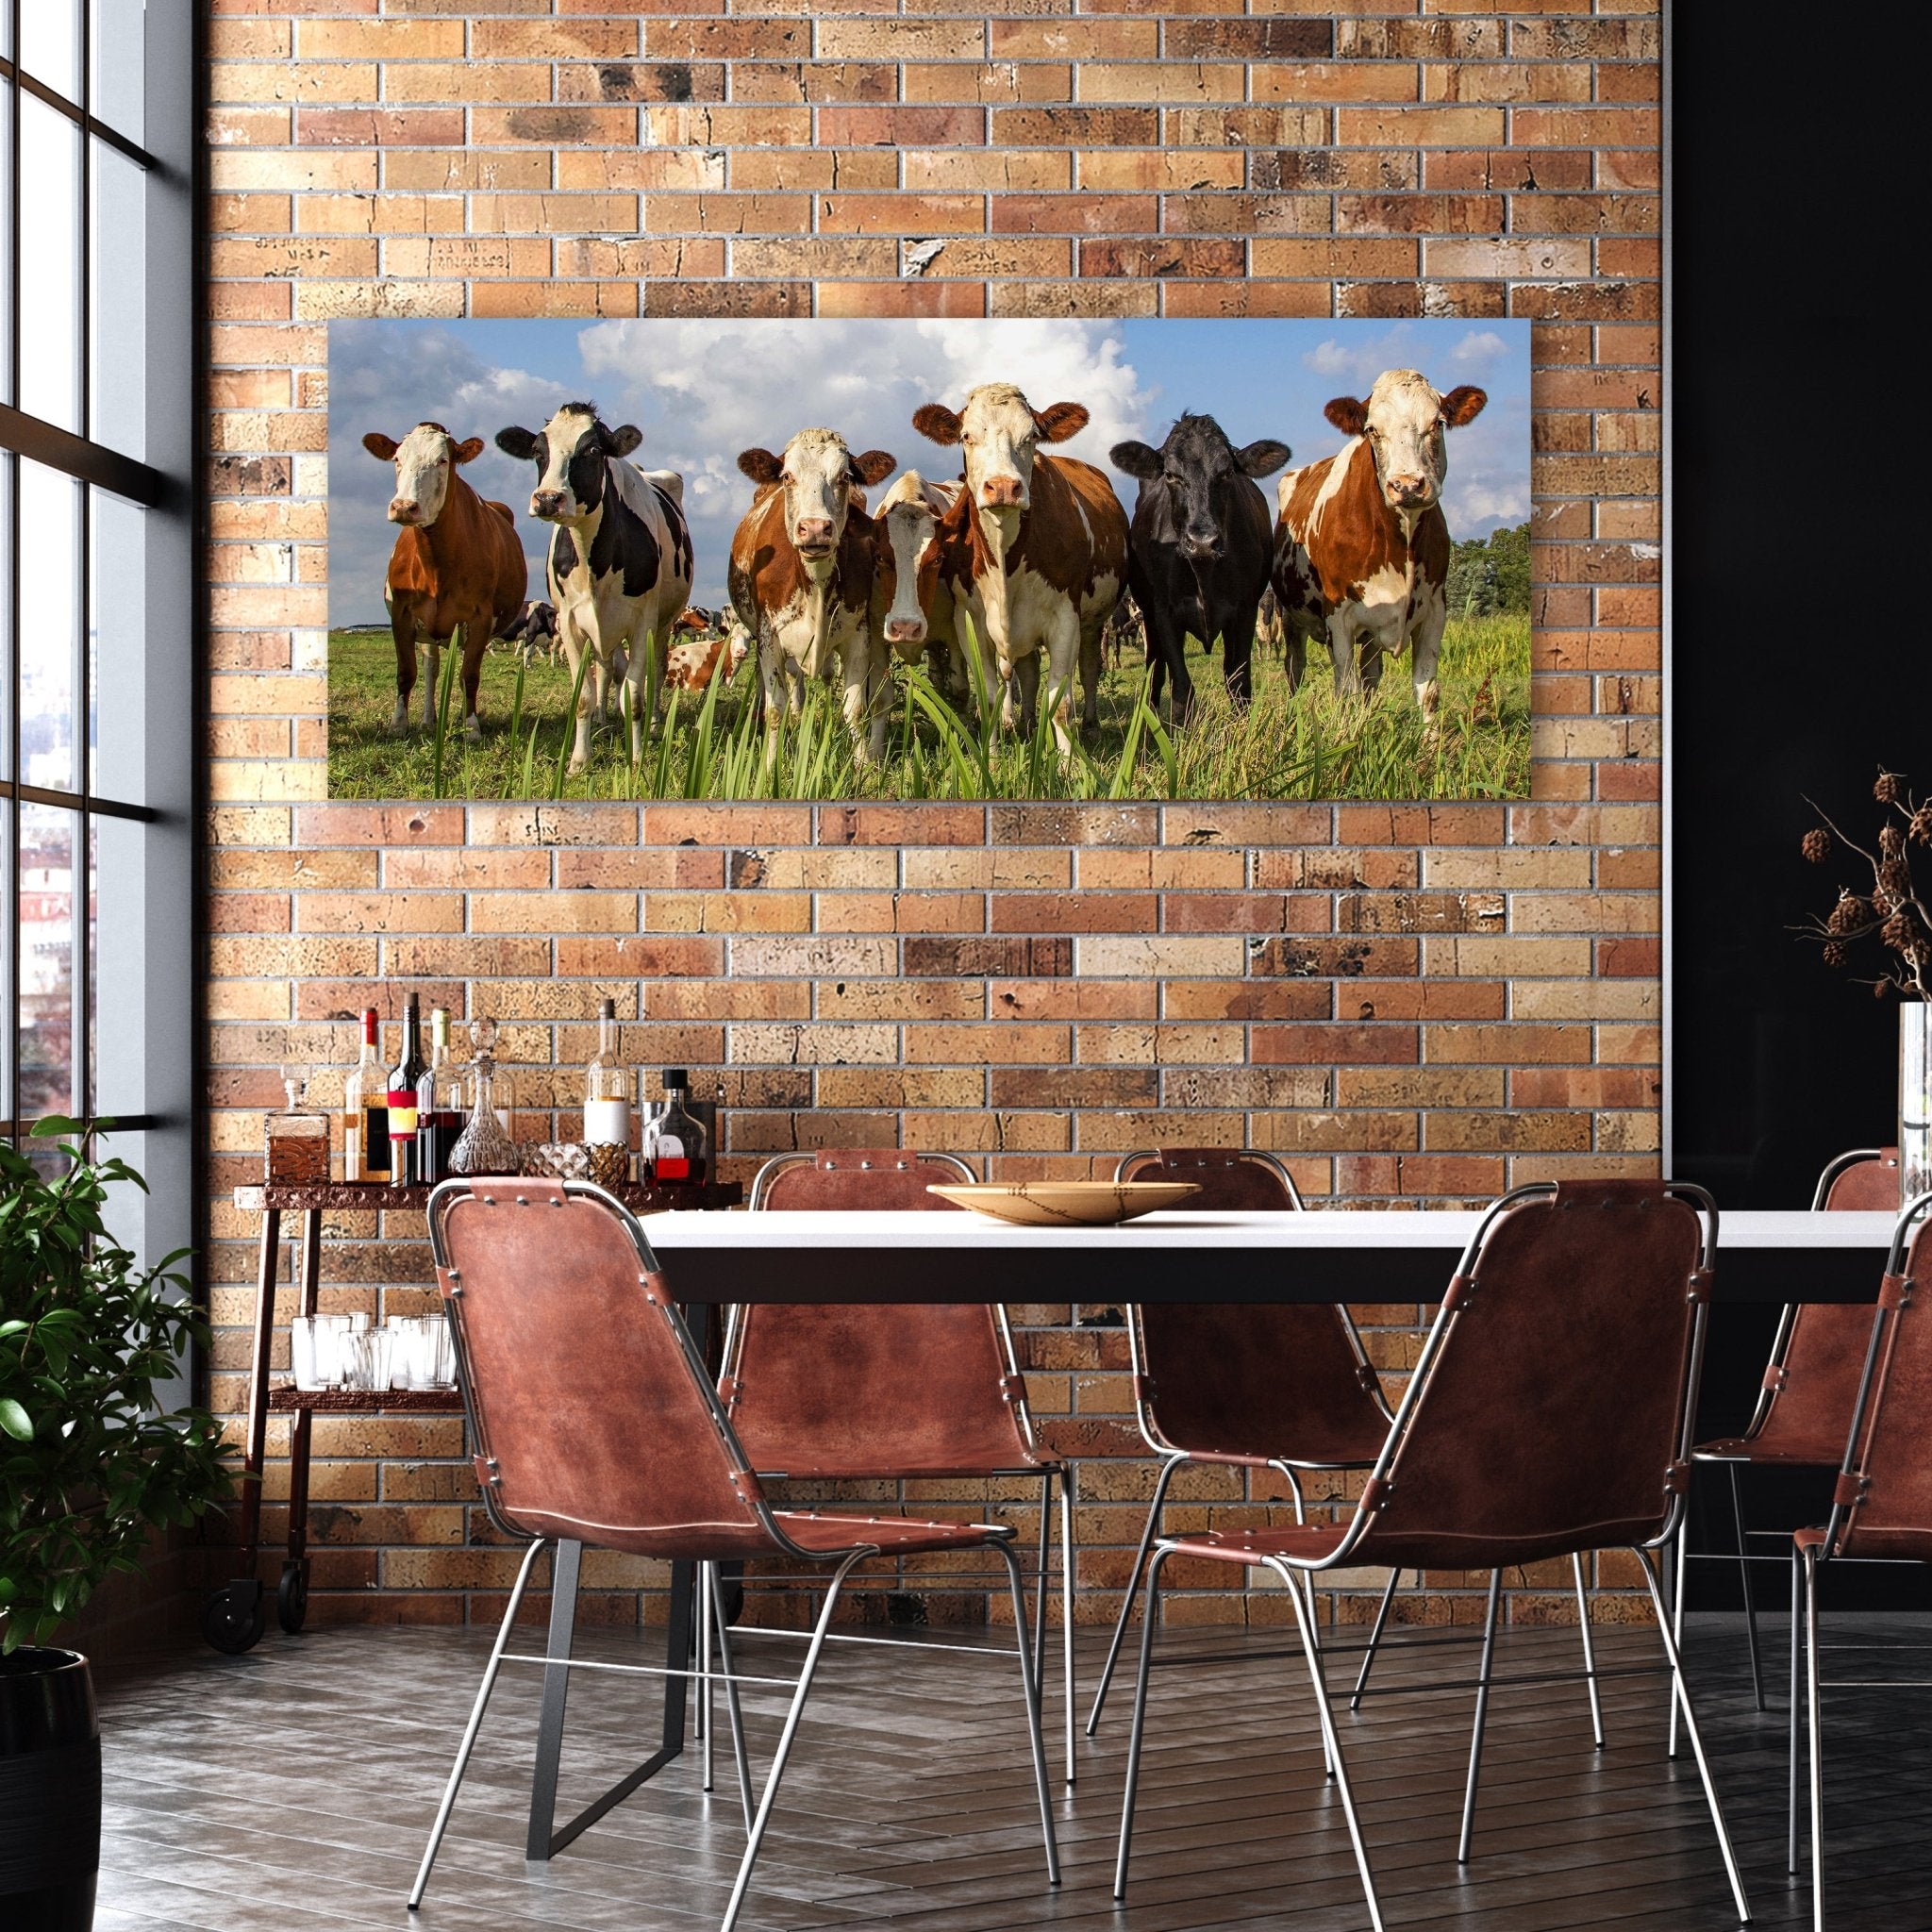 Leinwandbild Kühe auf der Weide, Tiere, Rinder, Kuh M1093 kaufen - Bild 2